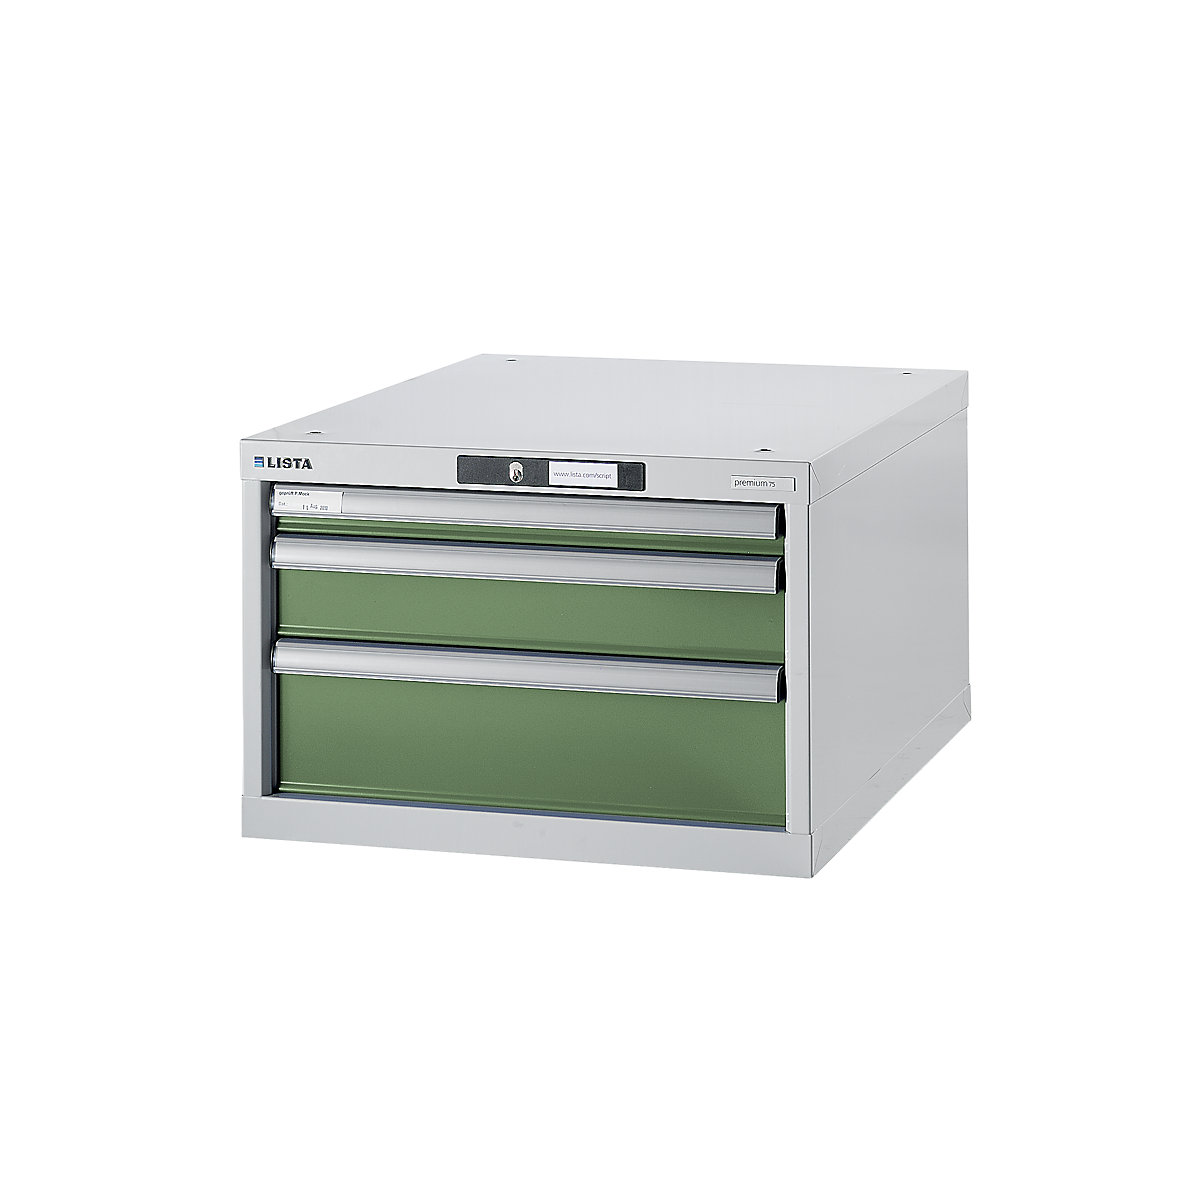 Modulni sistem za delovne mize, spodnja omarica – LISTA, višina 383 mm, 3 predali, reseda zelena-7